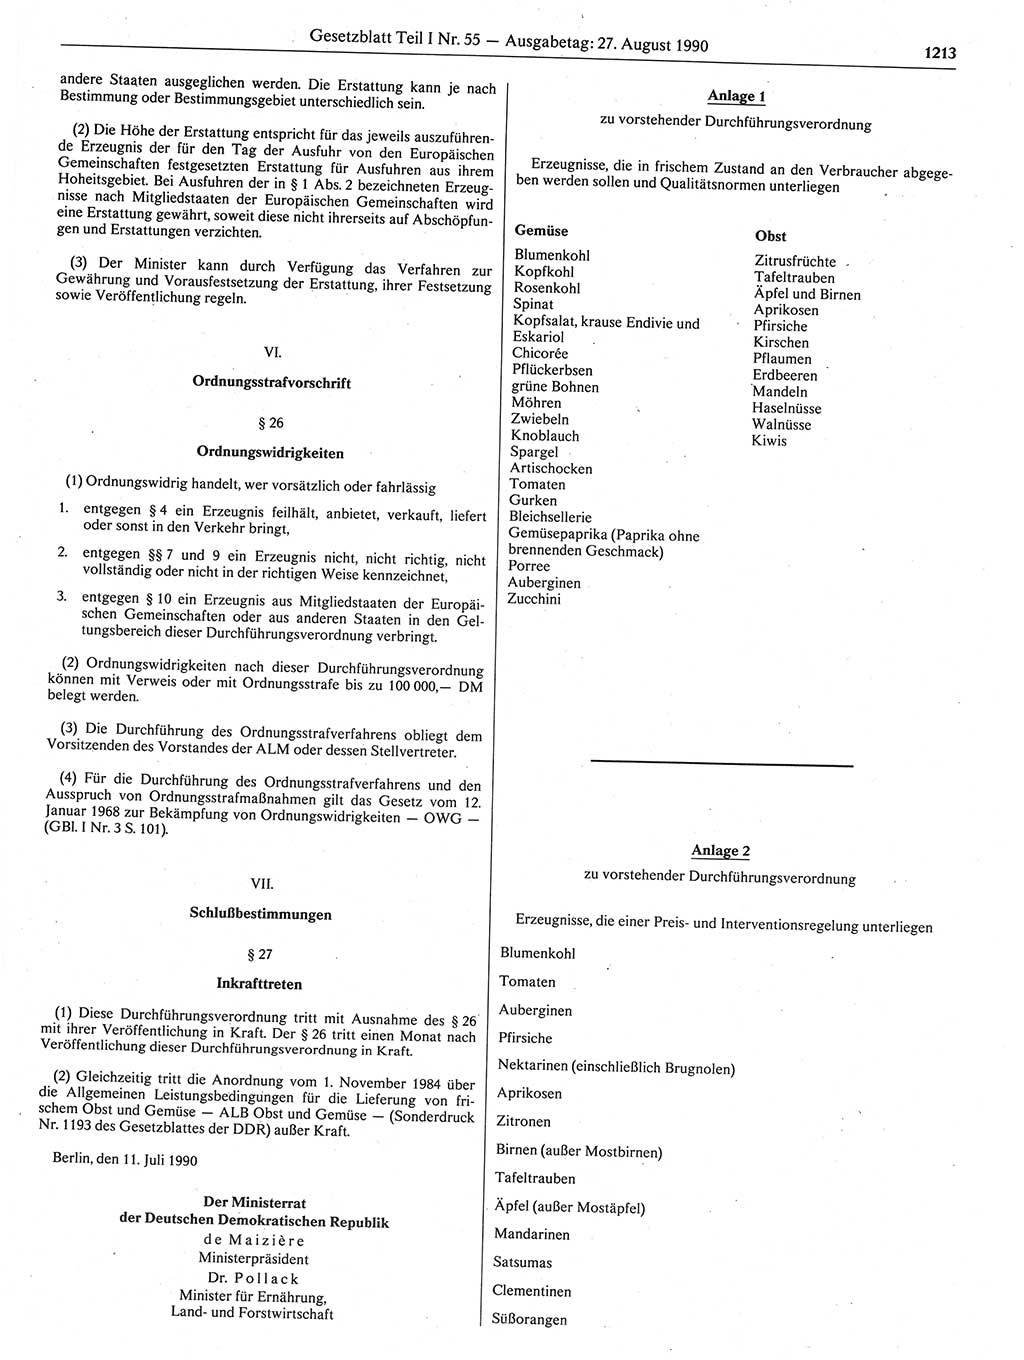 Gesetzblatt (GBl.) der Deutschen Demokratischen Republik (DDR) Teil Ⅰ 1990, Seite 1213 (GBl. DDR Ⅰ 1990, S. 1213)